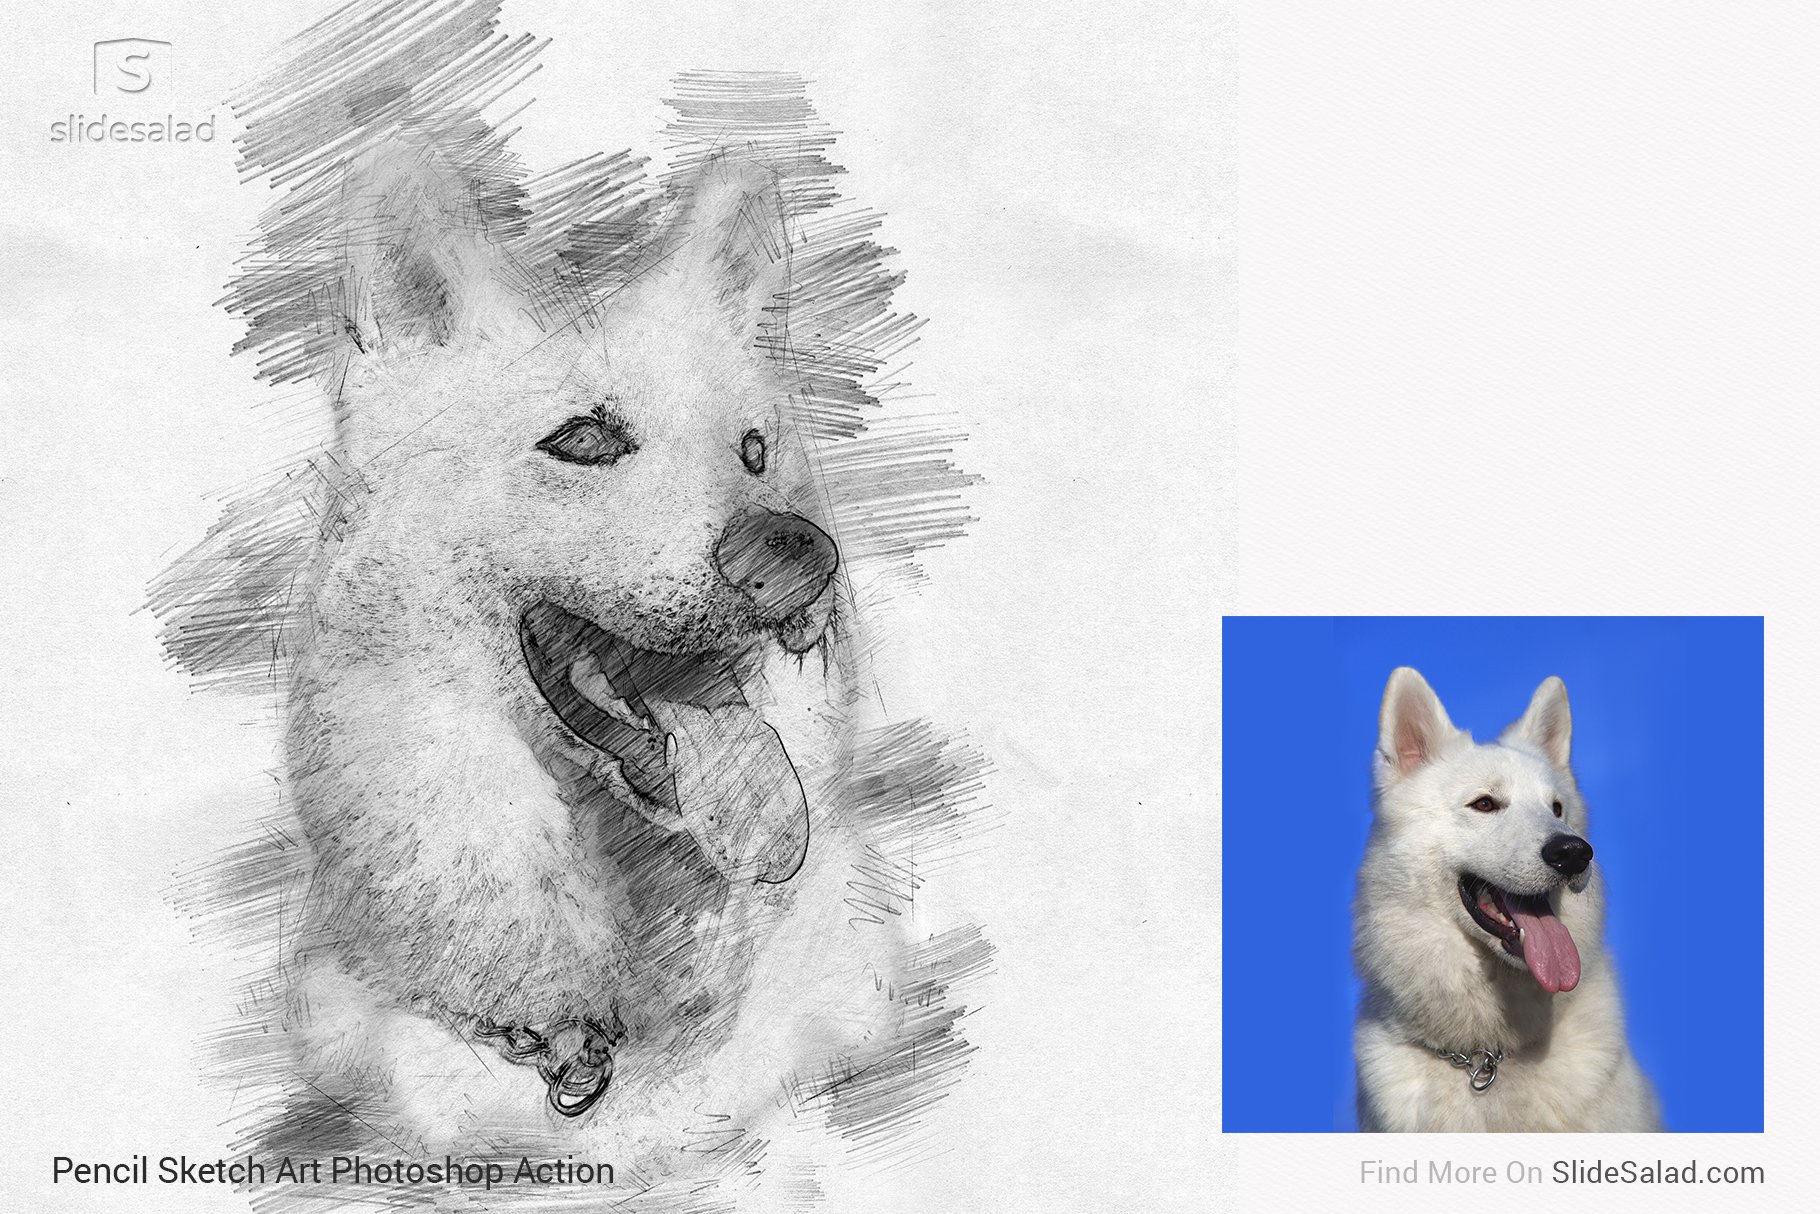 Pencil Sketch Art Photoshop Action - dog portrait with photo.